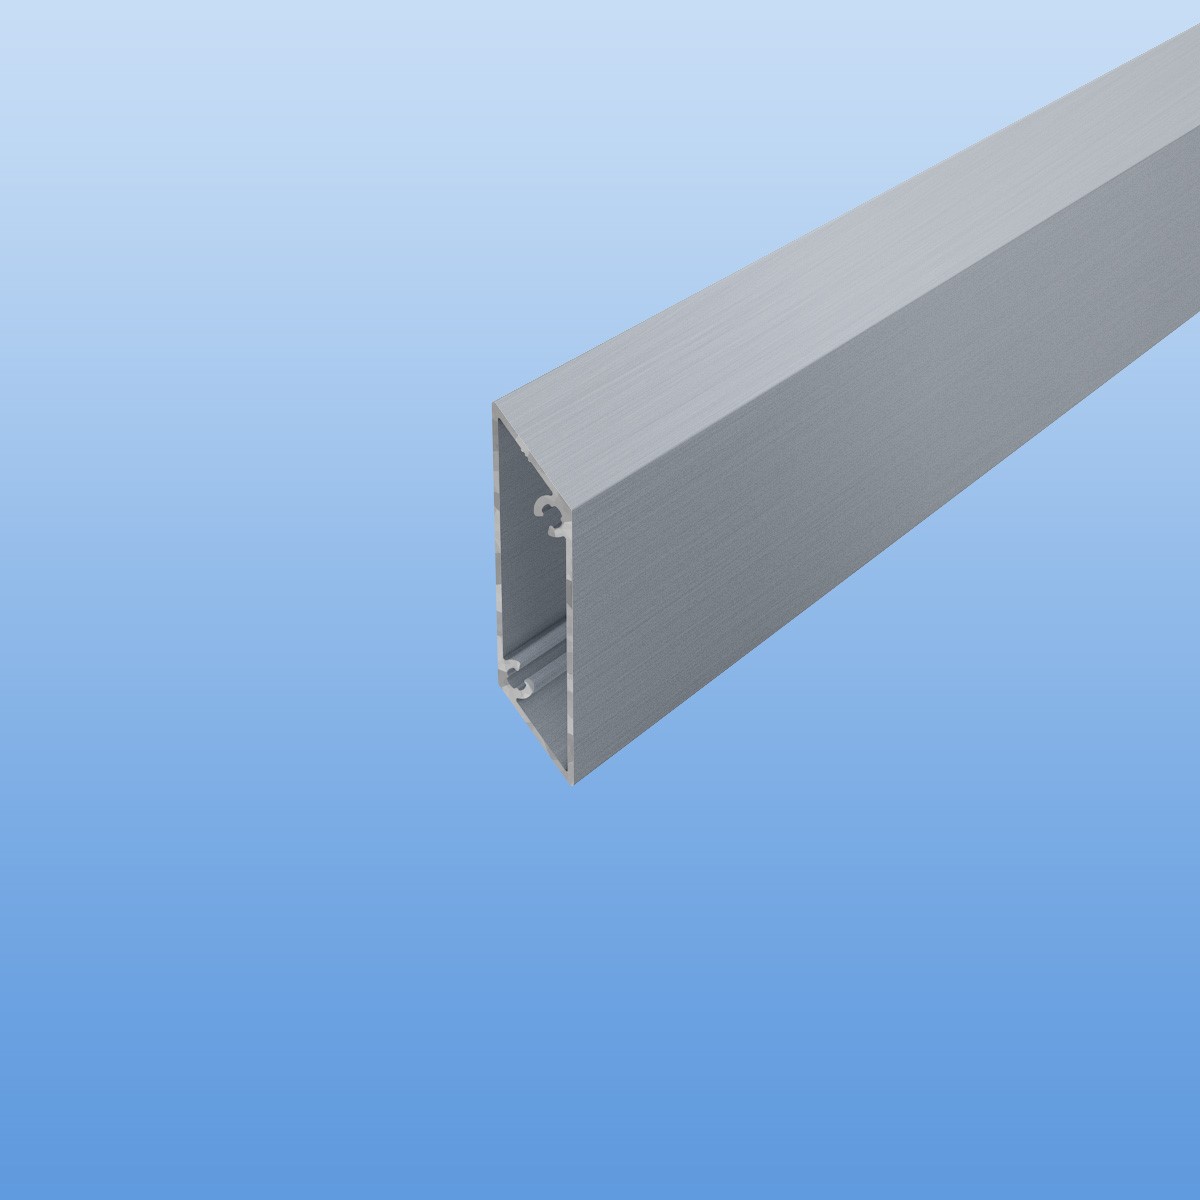 Rhombusprofil aus Aluminium 16mm in blank / unbeschichtet - Sichtfläche 53mm